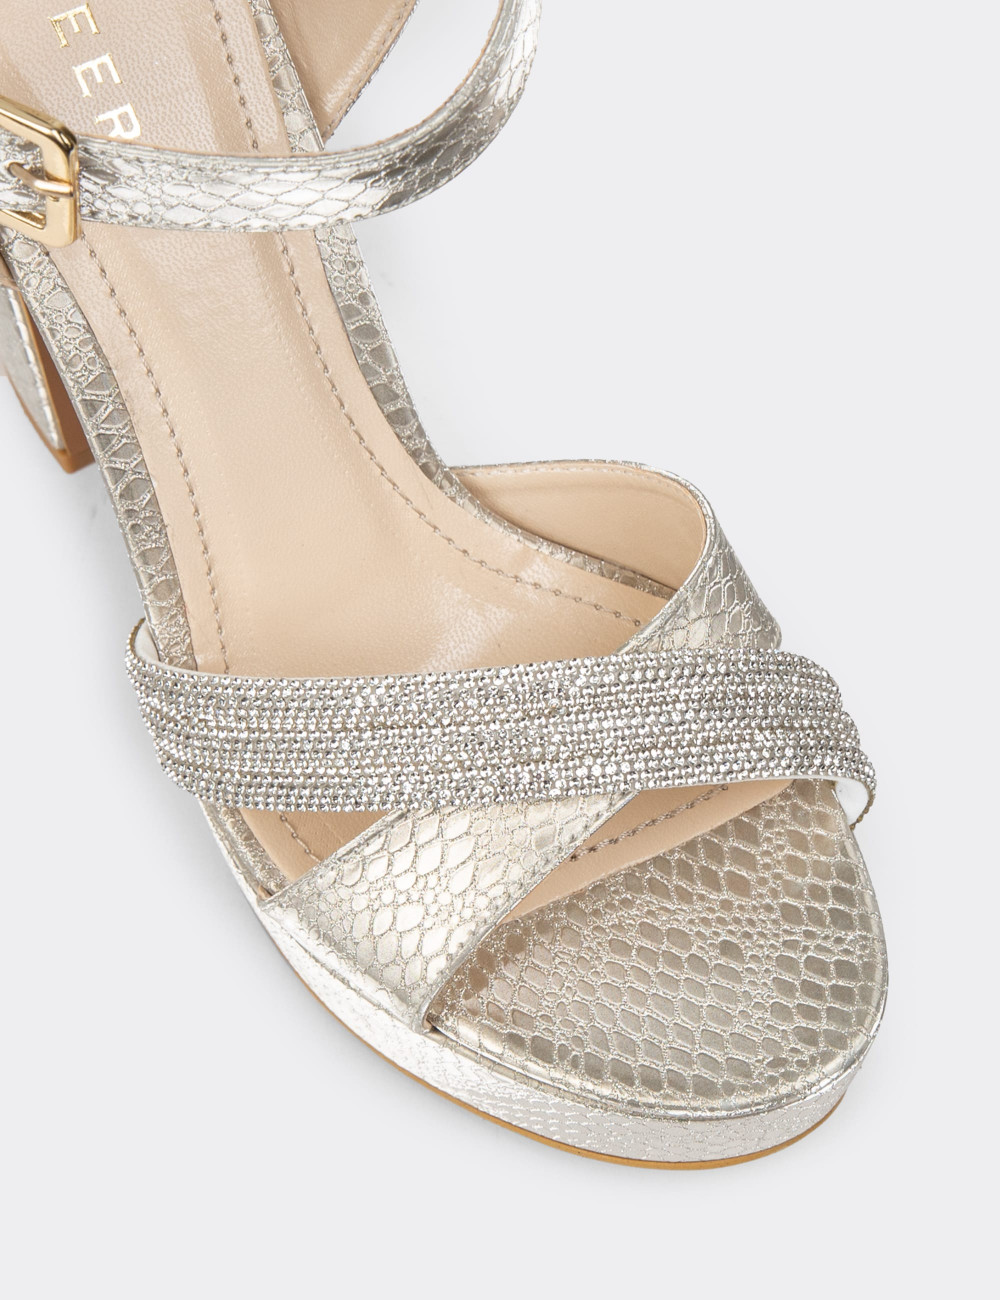 Altın Rengi Platform Topuk Kadın Abiye Ayakkabı - K2026ZALTM01